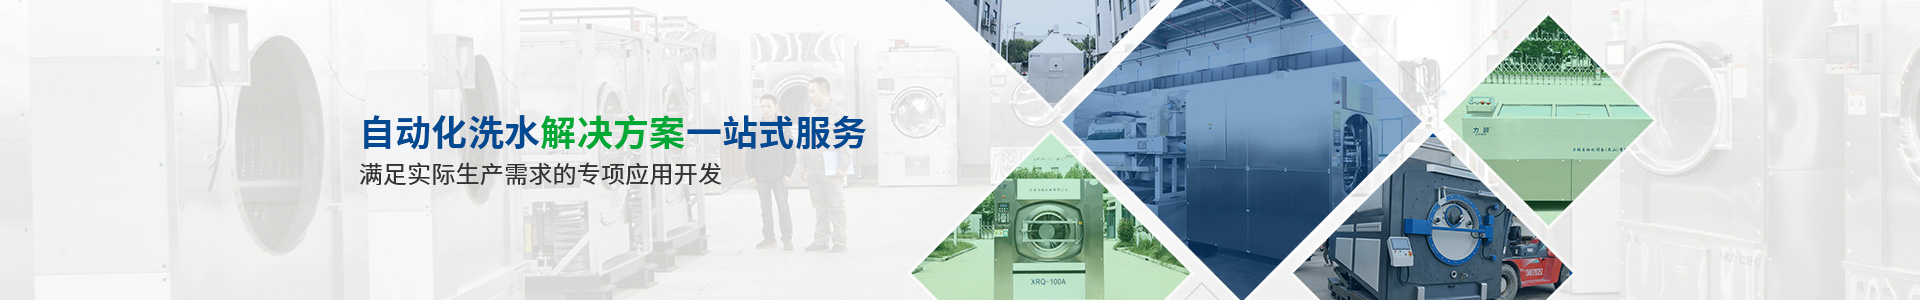 上海力颖提供自动化洗水解决方案一站式服务满足实际生产需求的开发